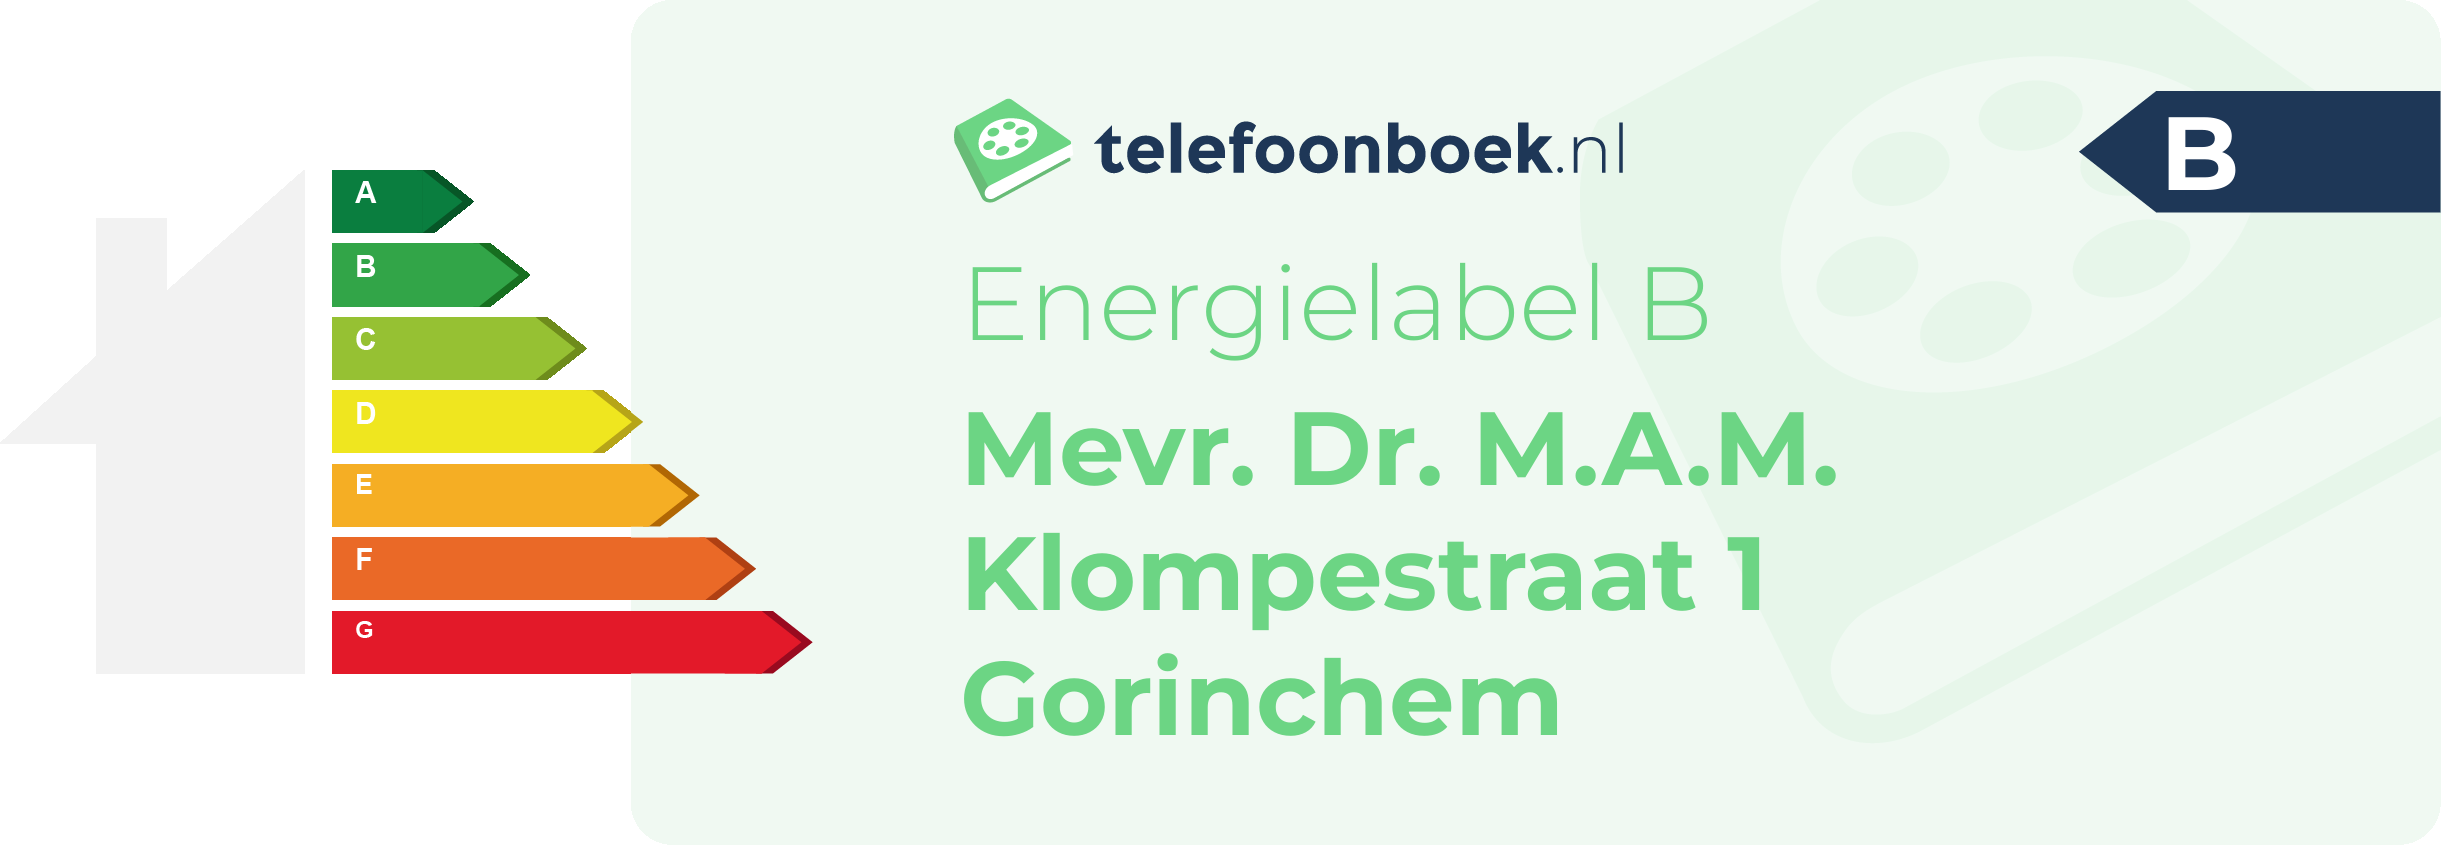 Energielabel Mevr. Dr. M.A.M. Klompestraat 1 Gorinchem